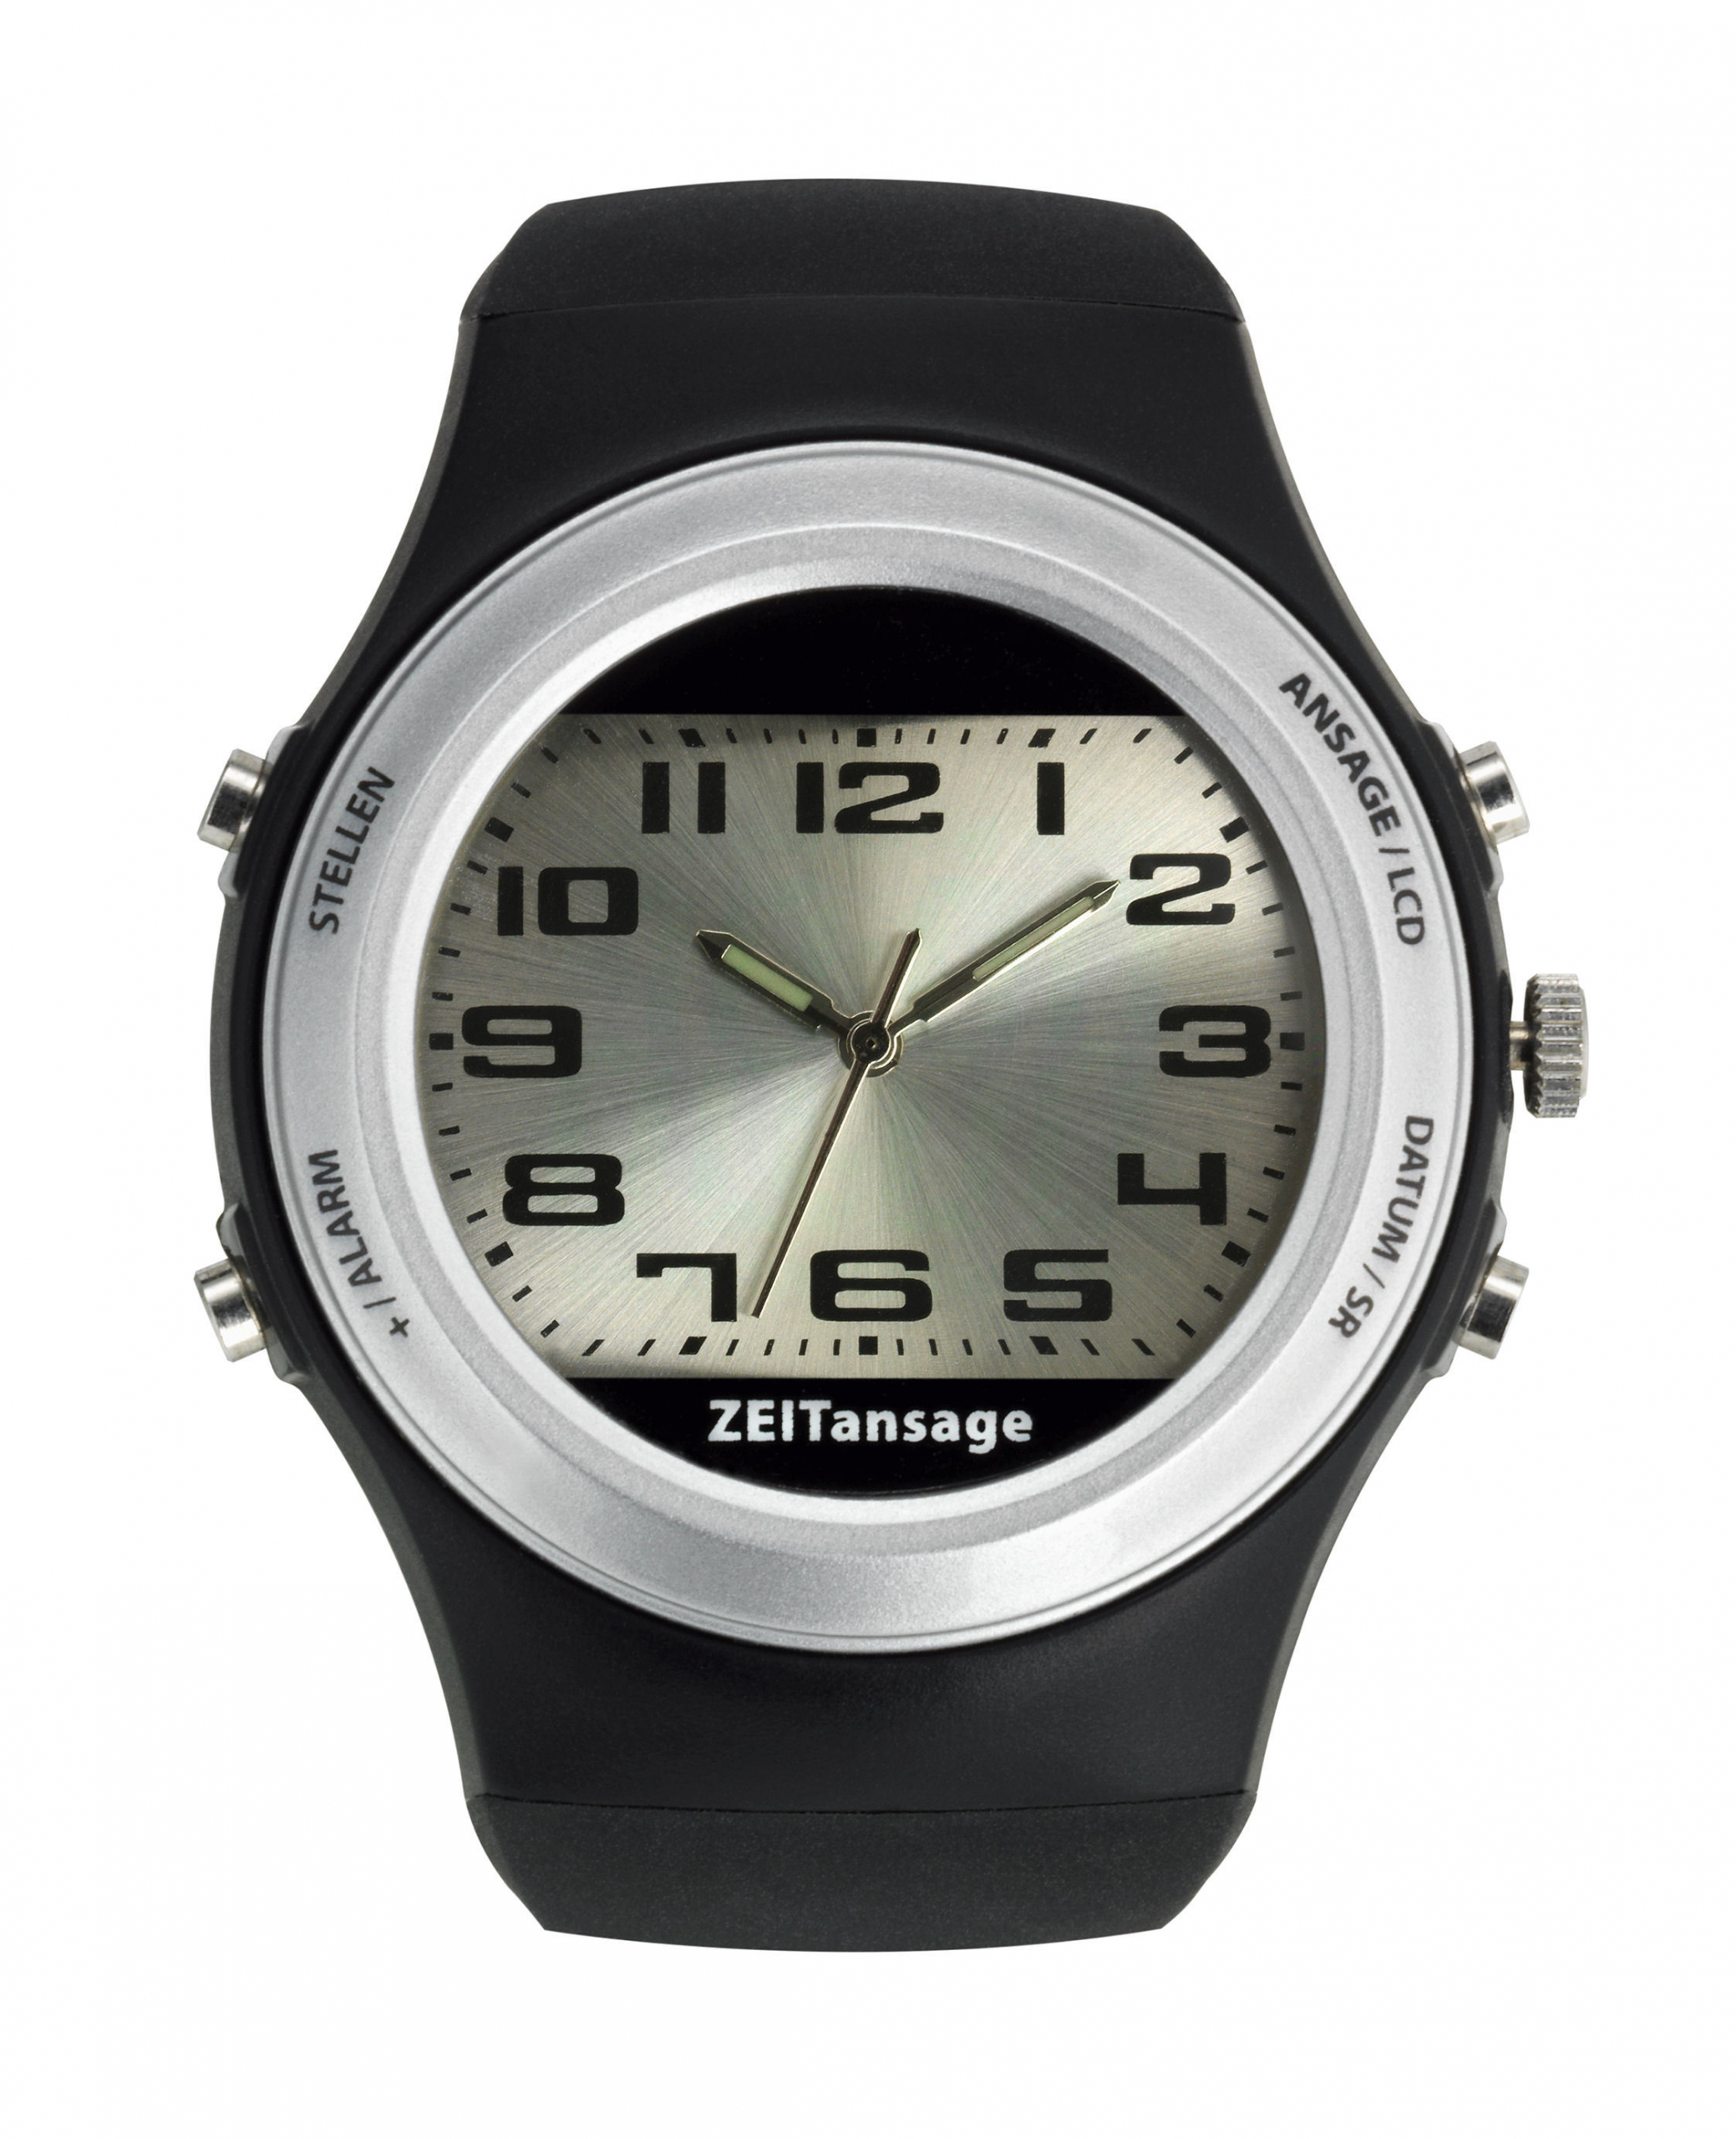 Sprechende Armbanduhr mit analoger und digitaler Anzeige